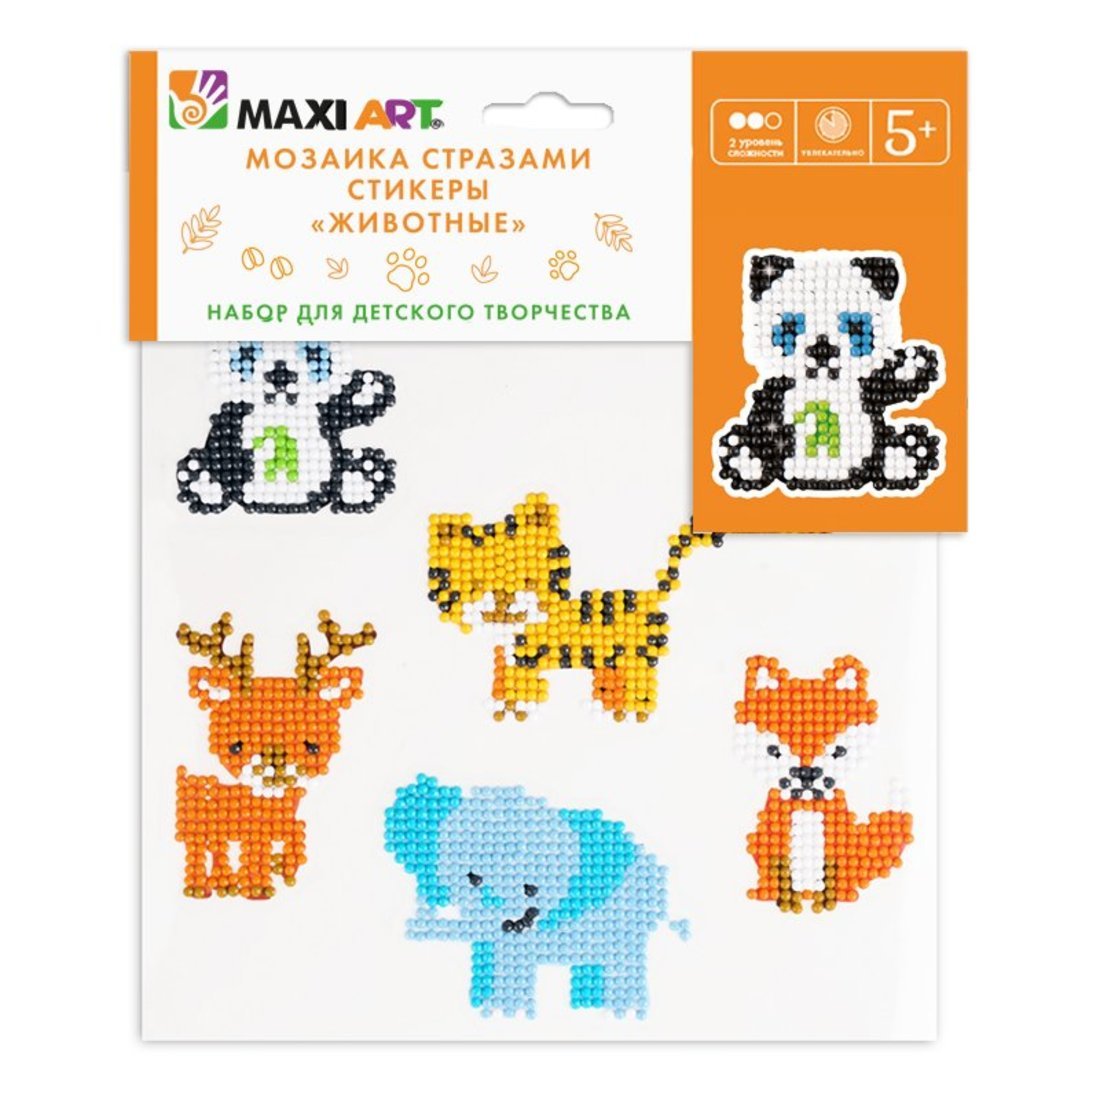 Мозаика стразами Maxi Art набор из 6 стикеров со стразами Животные 20х20 см MA-KN0247-9